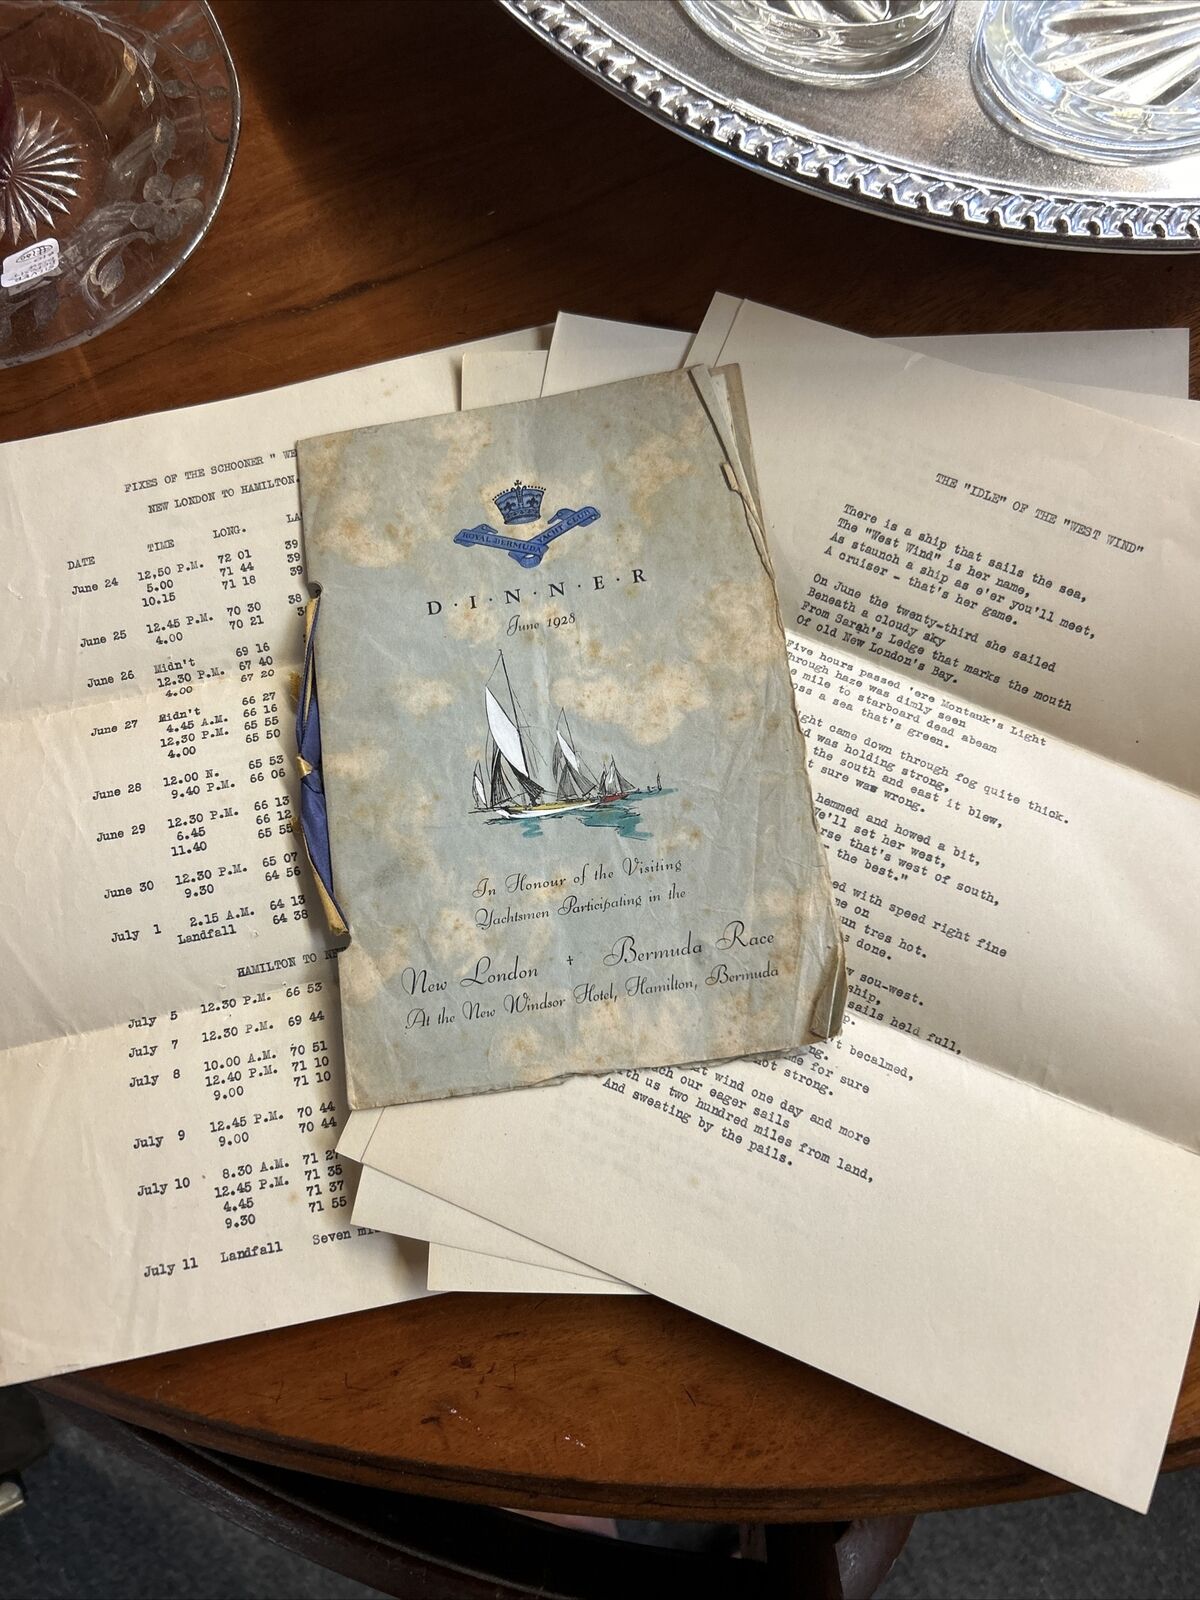 ROYAL BERMUDA YACHT CLUB 1928 Ocean Race DINNER MENU FIXES SCHOONER “WEST WIND “